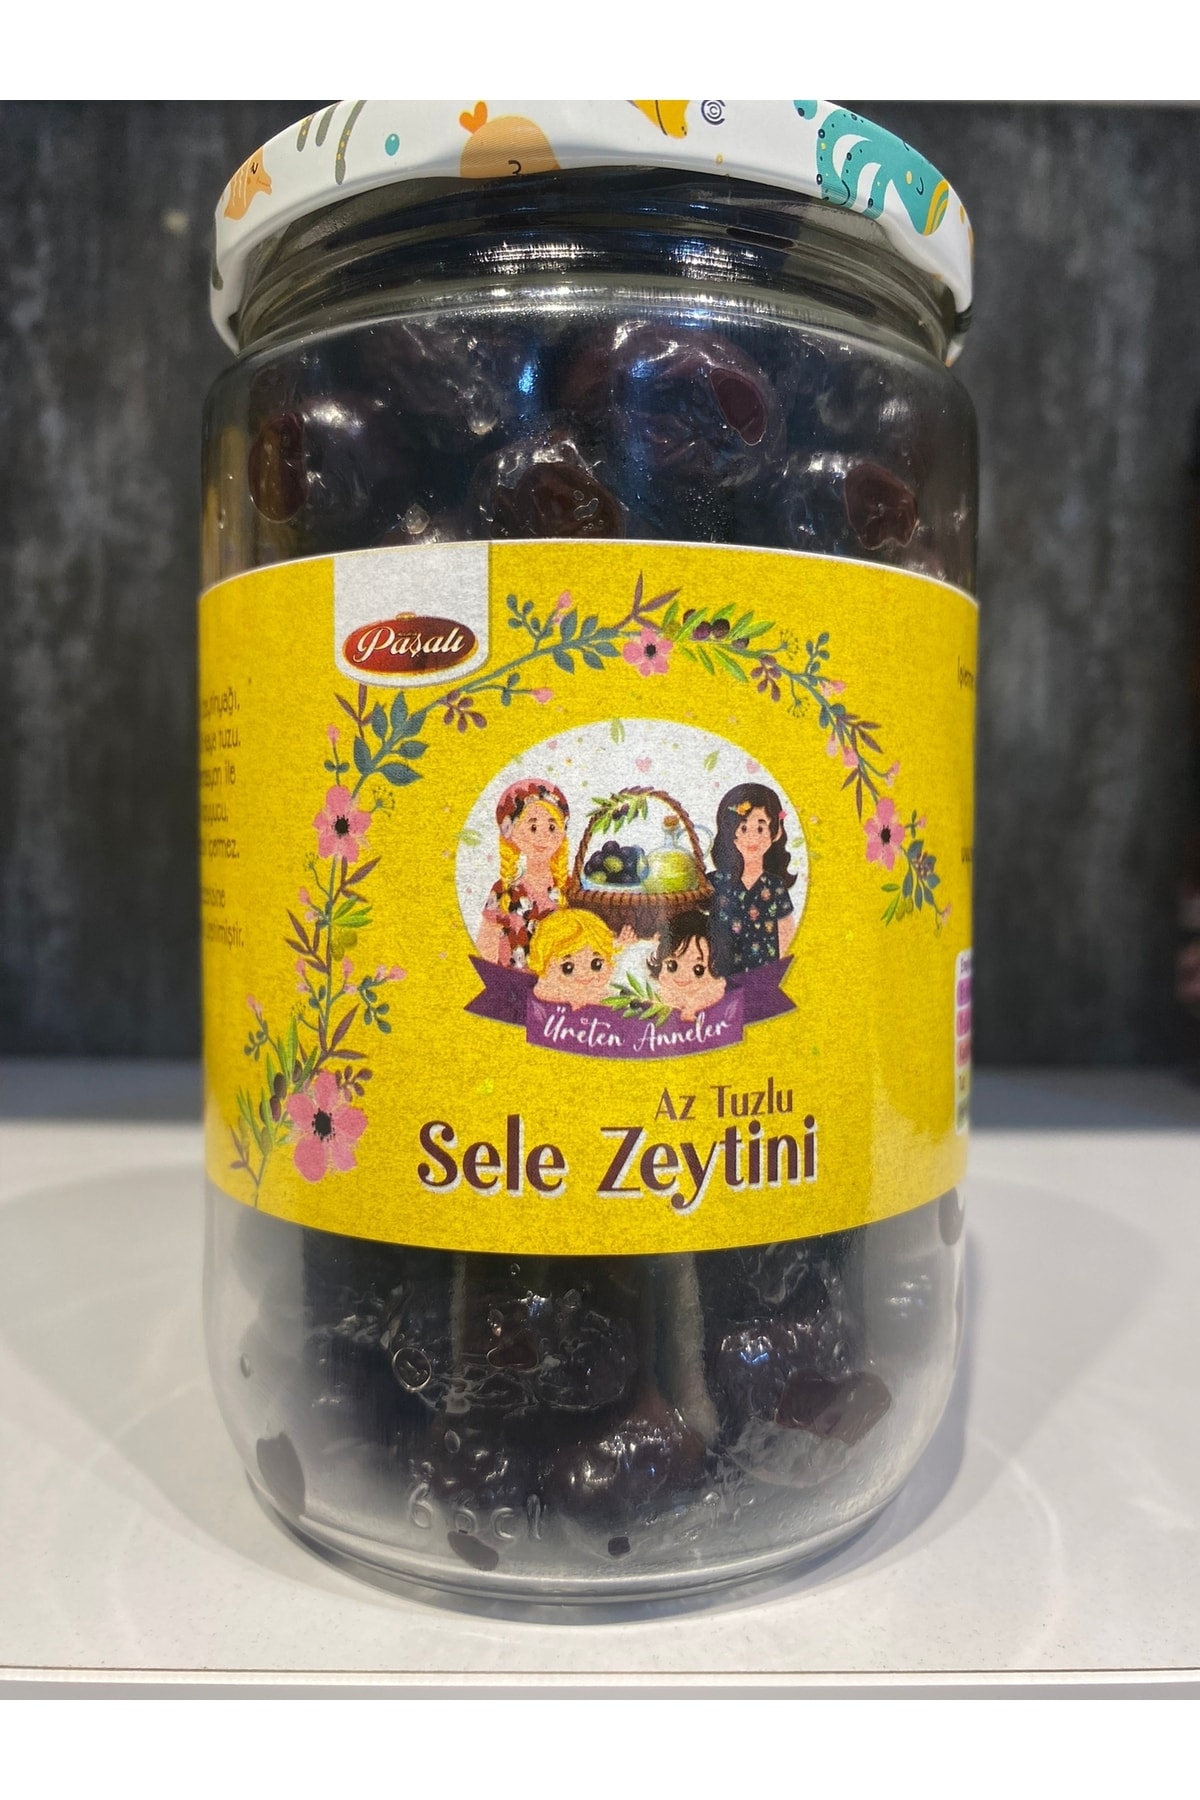 ÜRETEN ANNELER Sele Zeytini (az Tuzlu %0.05 ) 500 gr